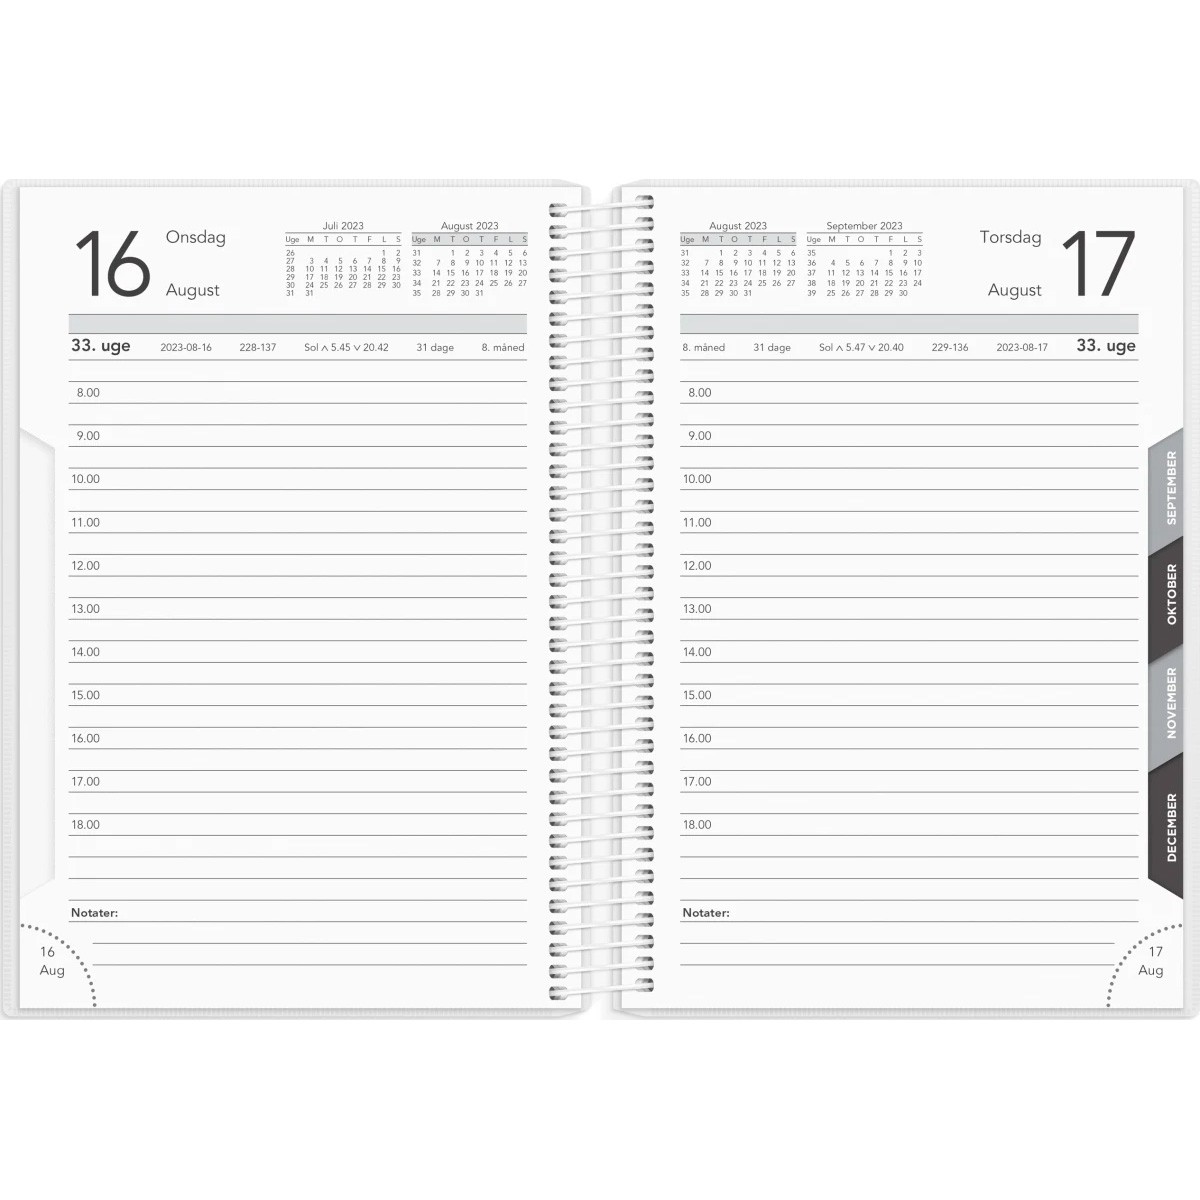 Mayland 2023 23265000 Basic dagkalender grå